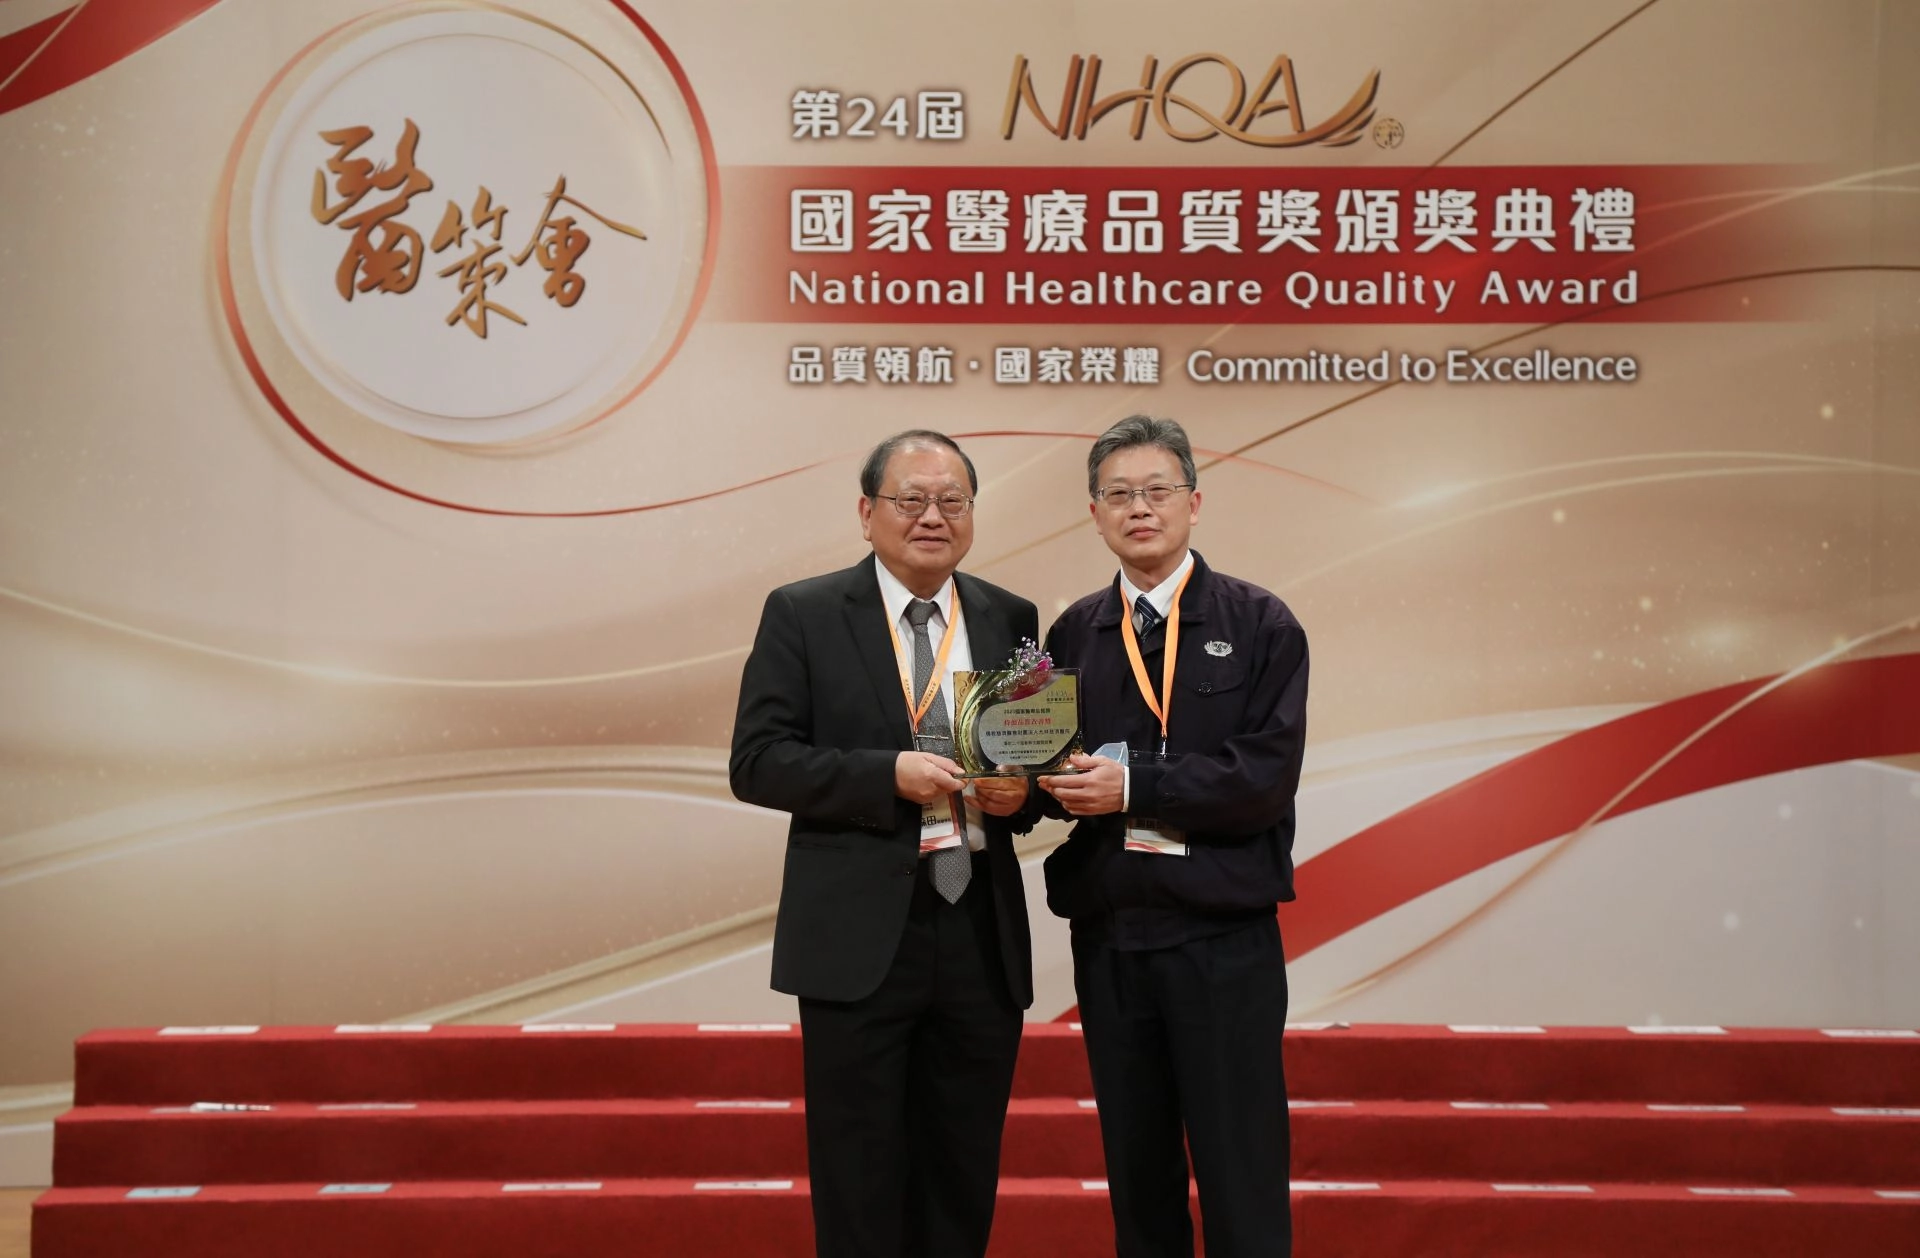 大林及斗六慈濟醫院在第24屆國家醫療品質獎共獲得六項獎項。